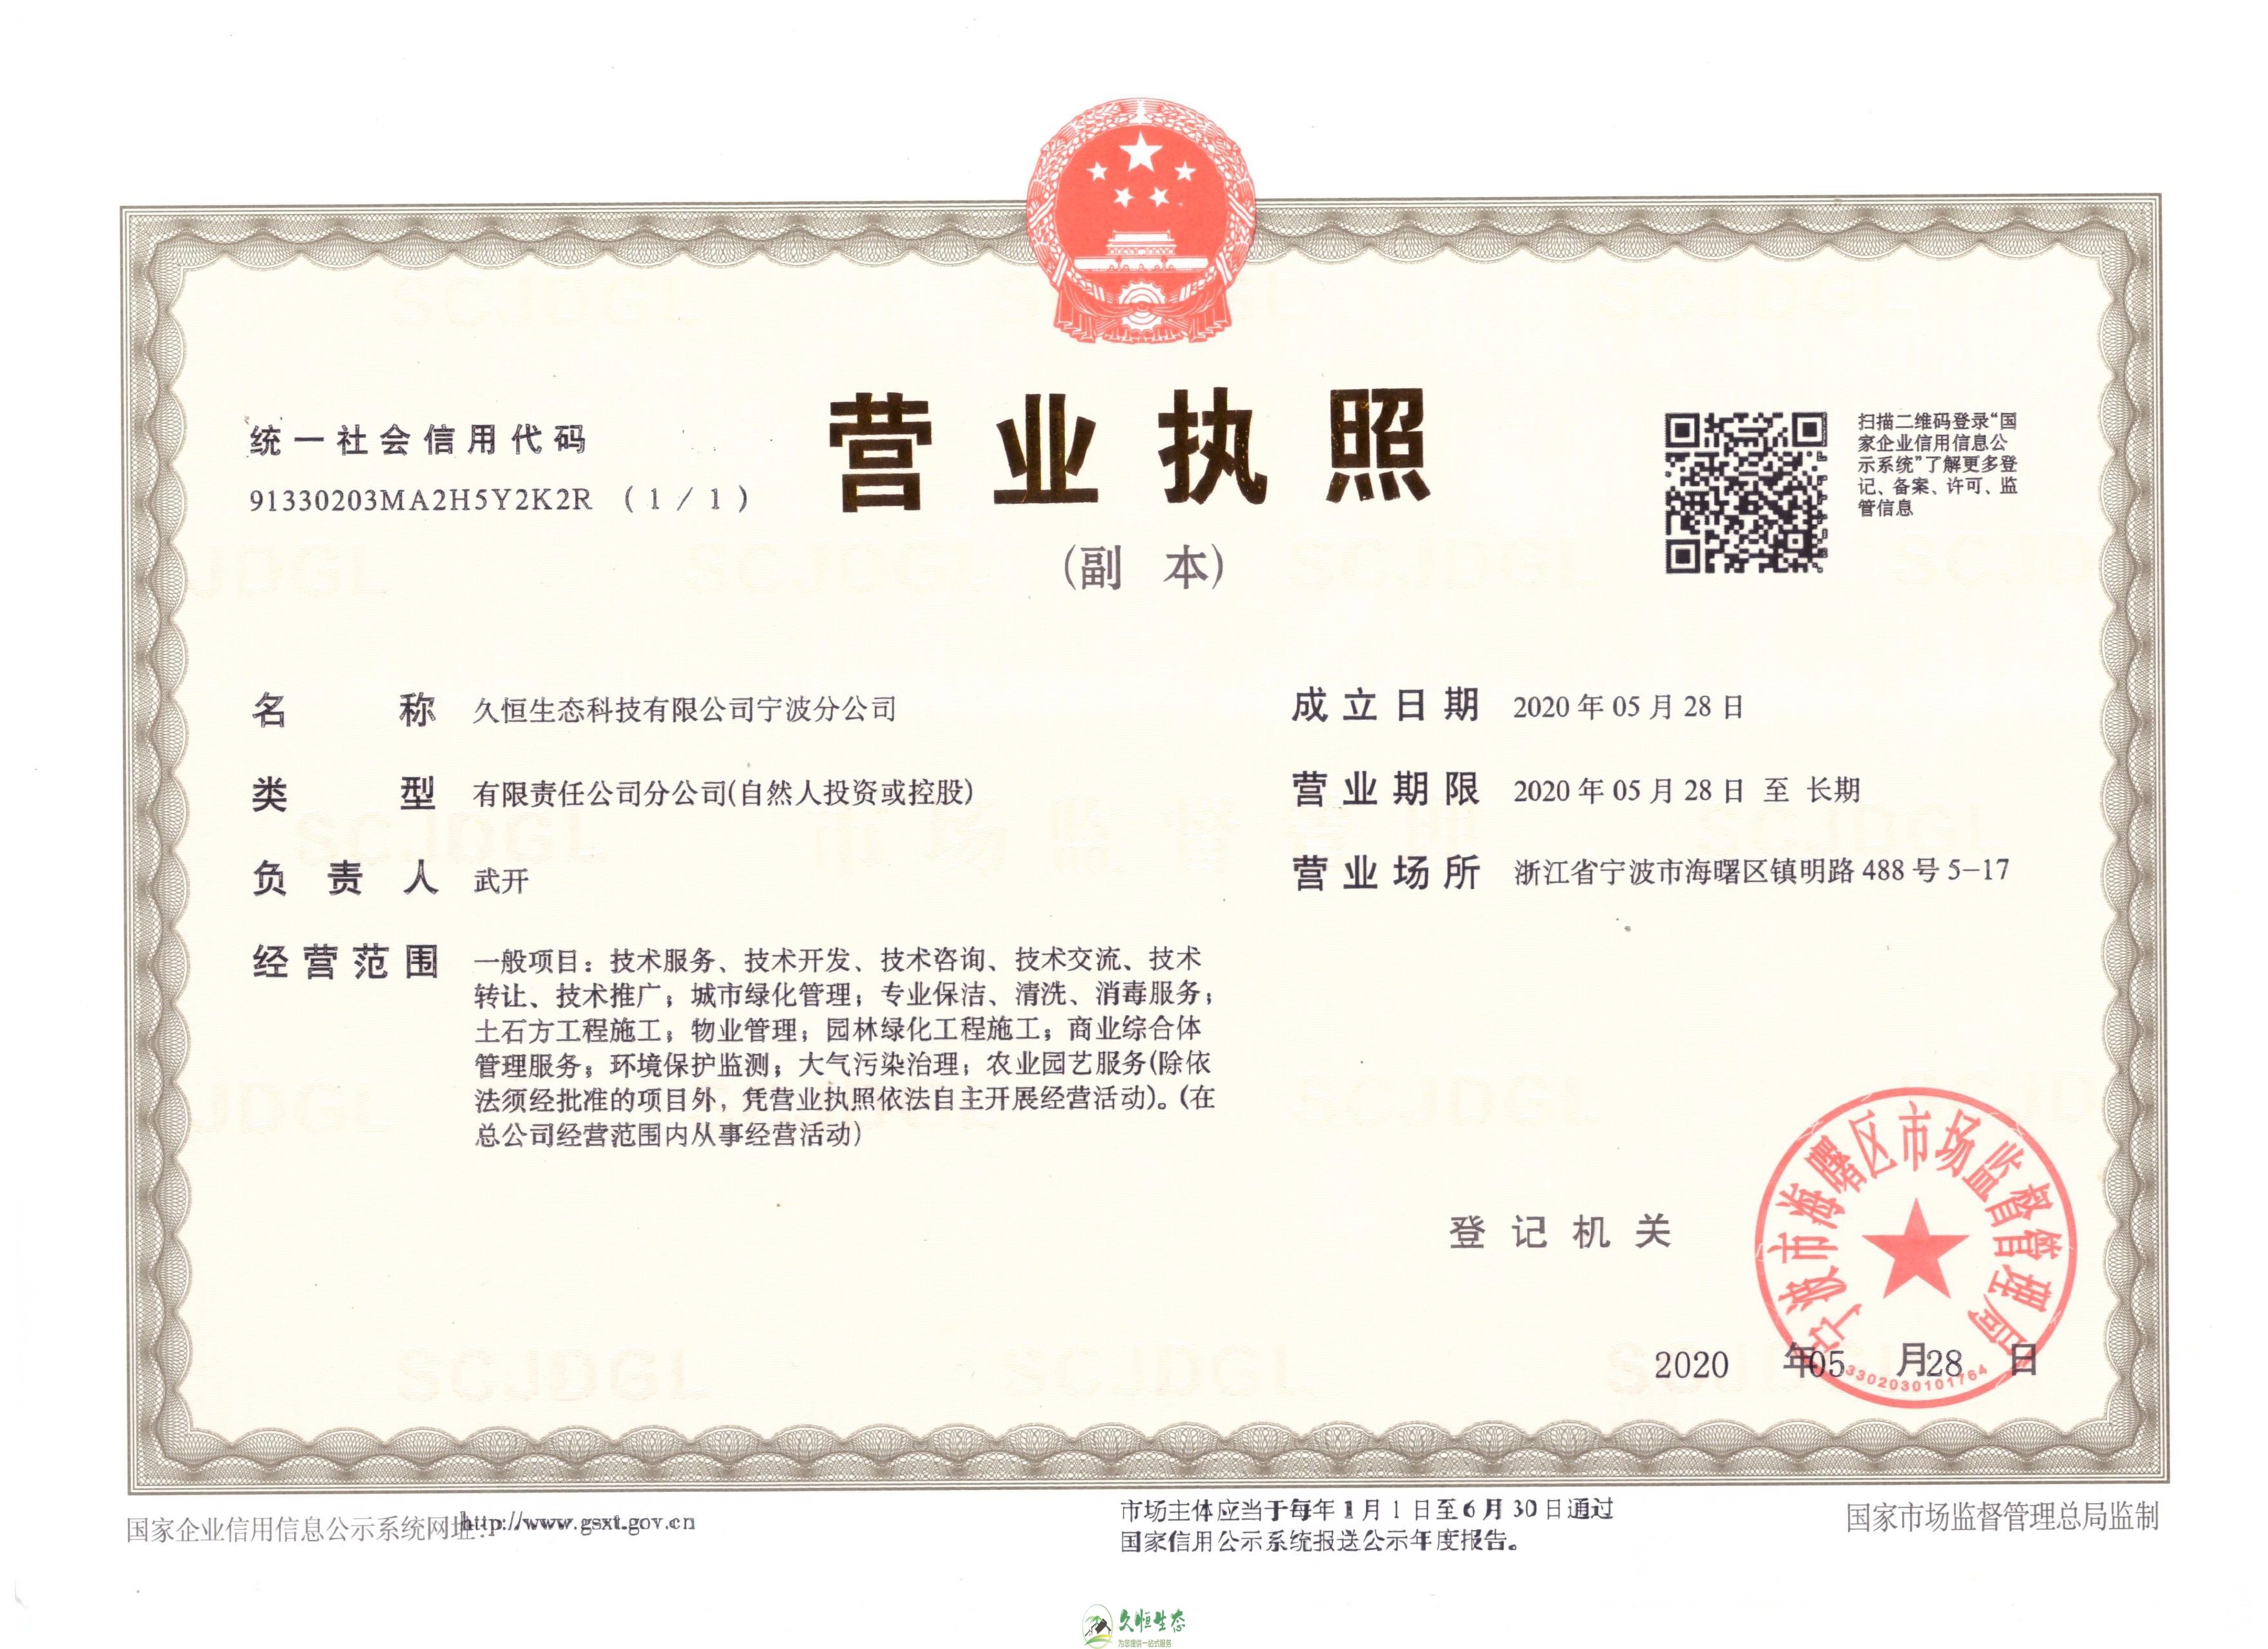 杭州余杭久恒生态宁波分公司2020年5月28日成立